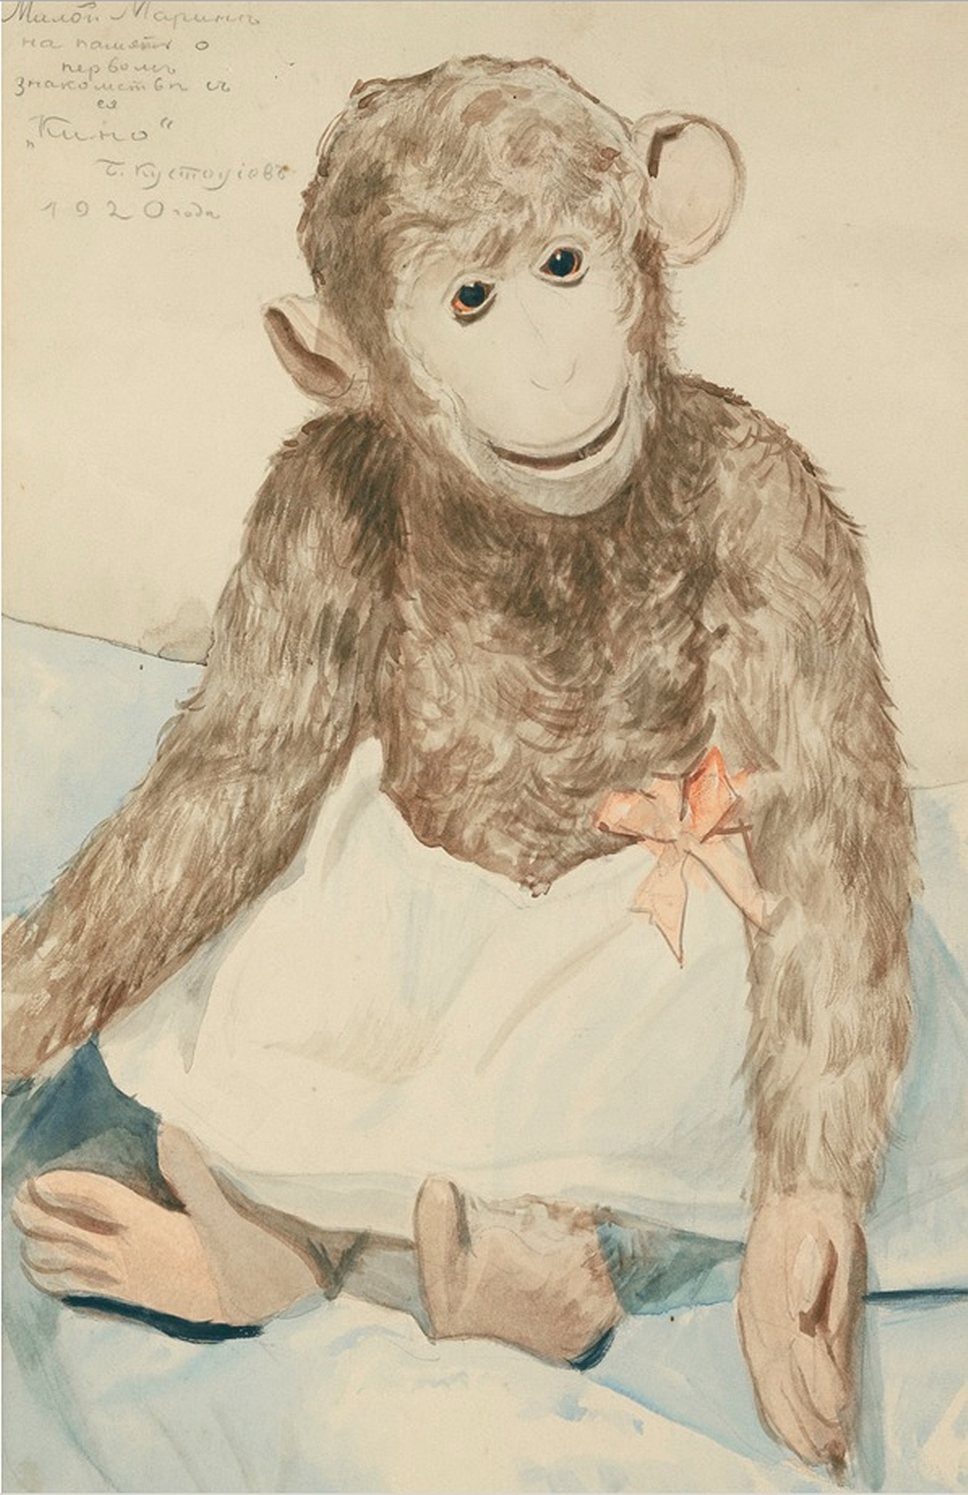 Борис Кустодиев. «Игрушечная обезьянка», 1920 год.
Sotheby’s, эстимейт &amp;#163;120–180 тыс.